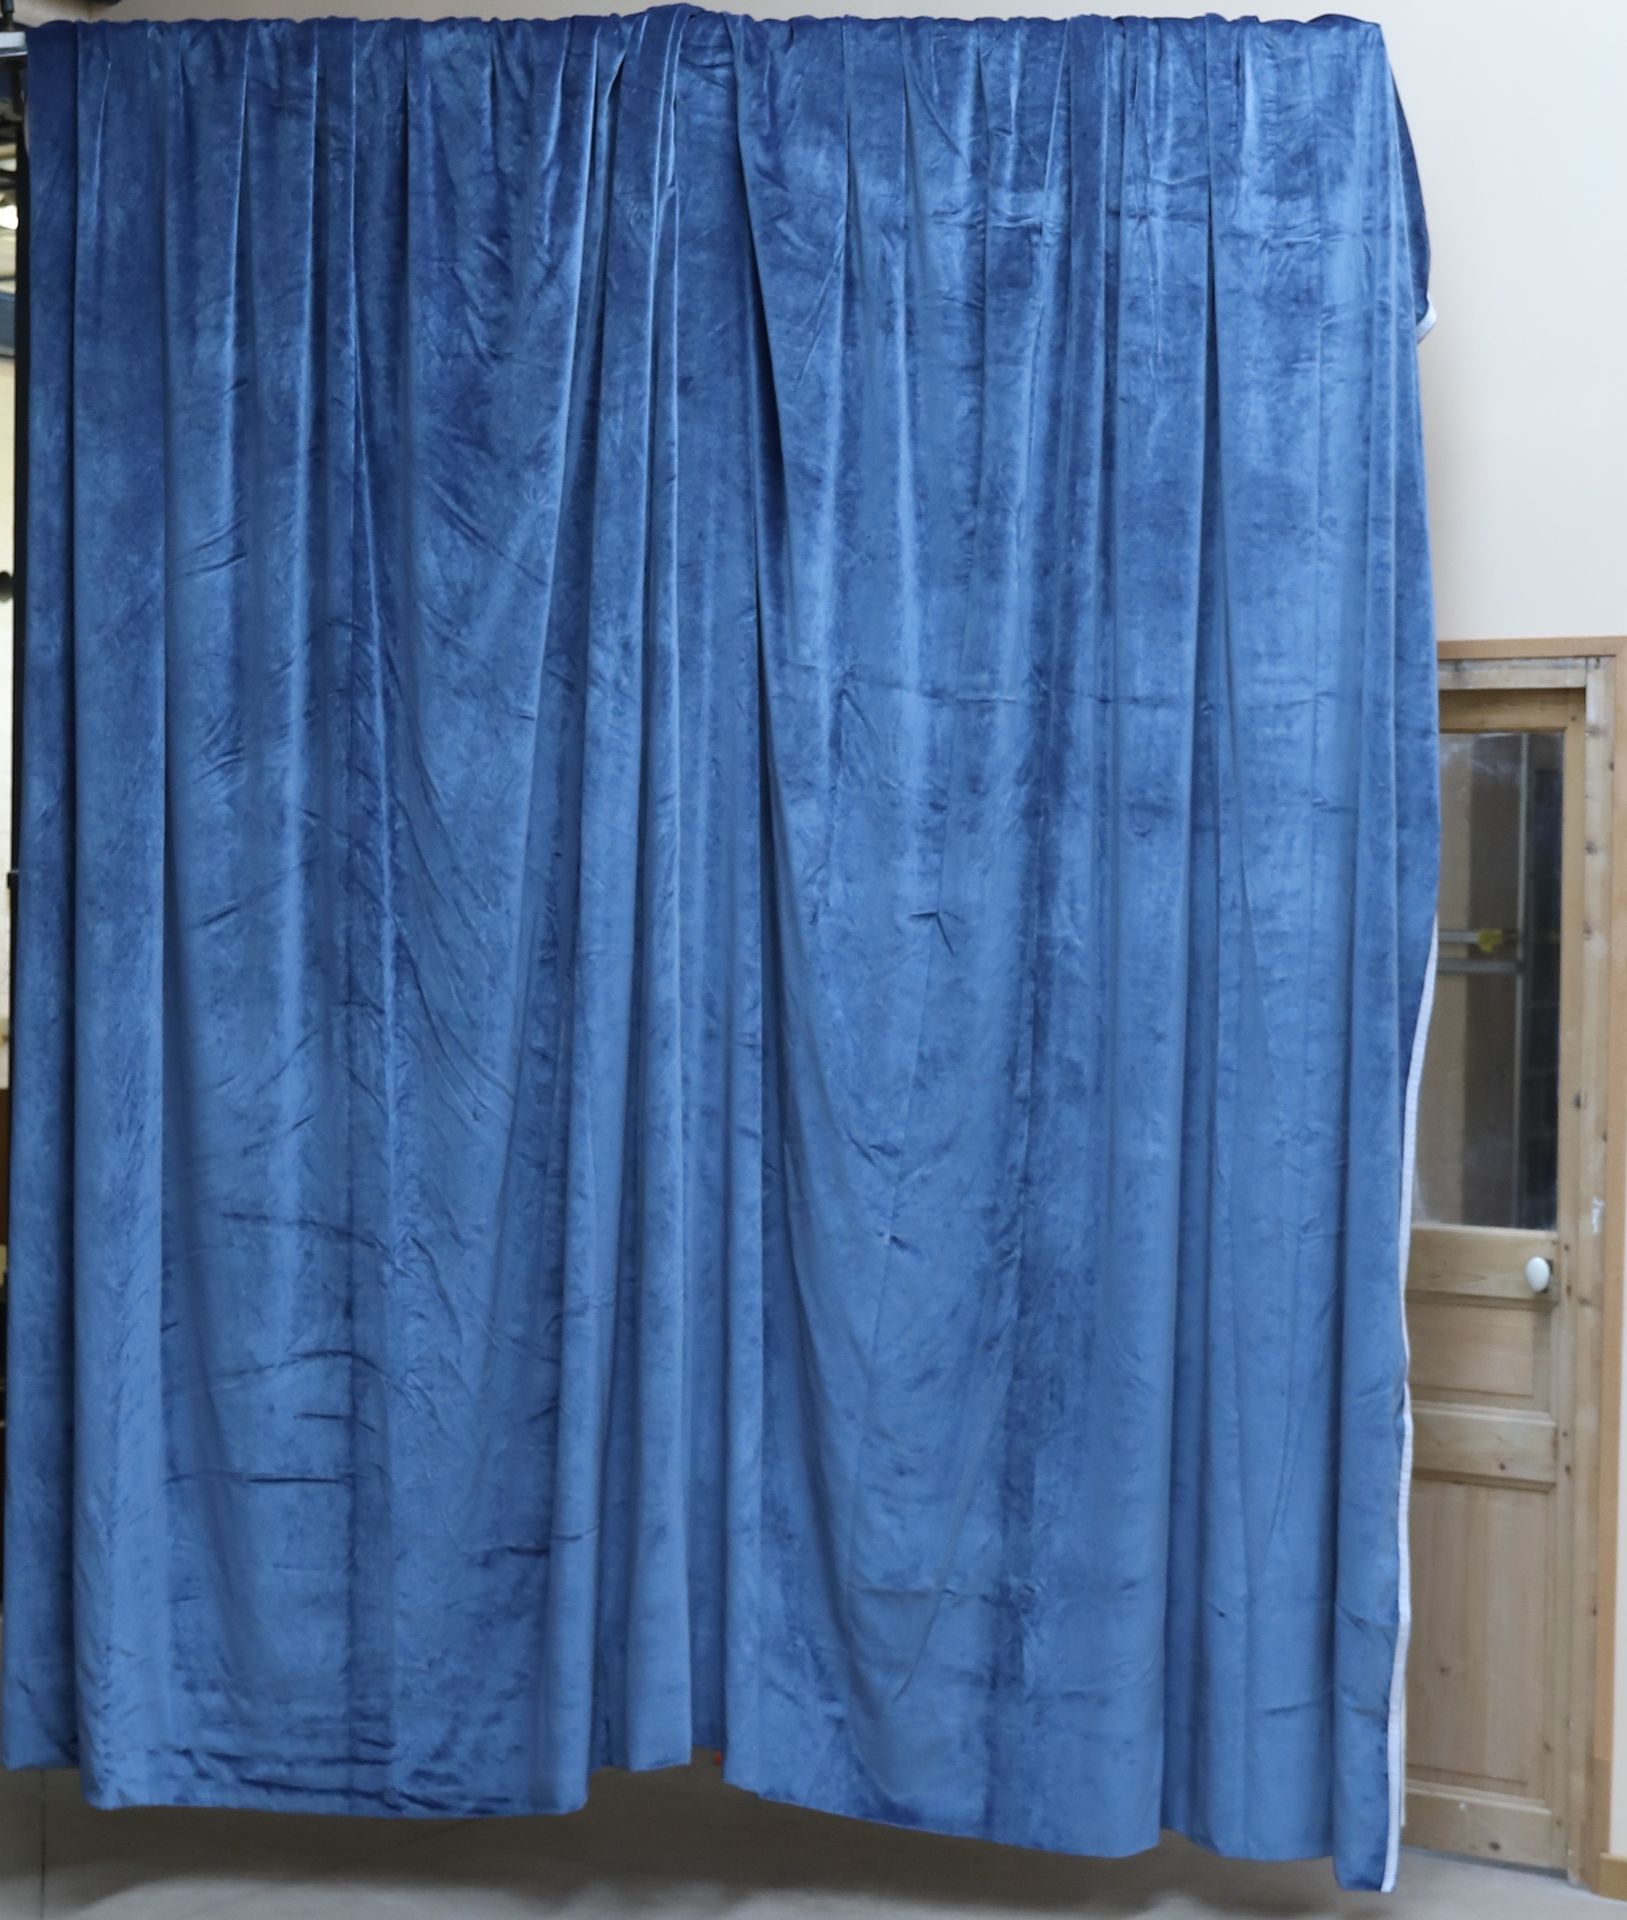 Null 浅蓝色天鹅绒大窗帘一对
330 x 240厘米左右。
状况非常好

出处：原巴黎大陆酒店，加尼耶歌剧院对面